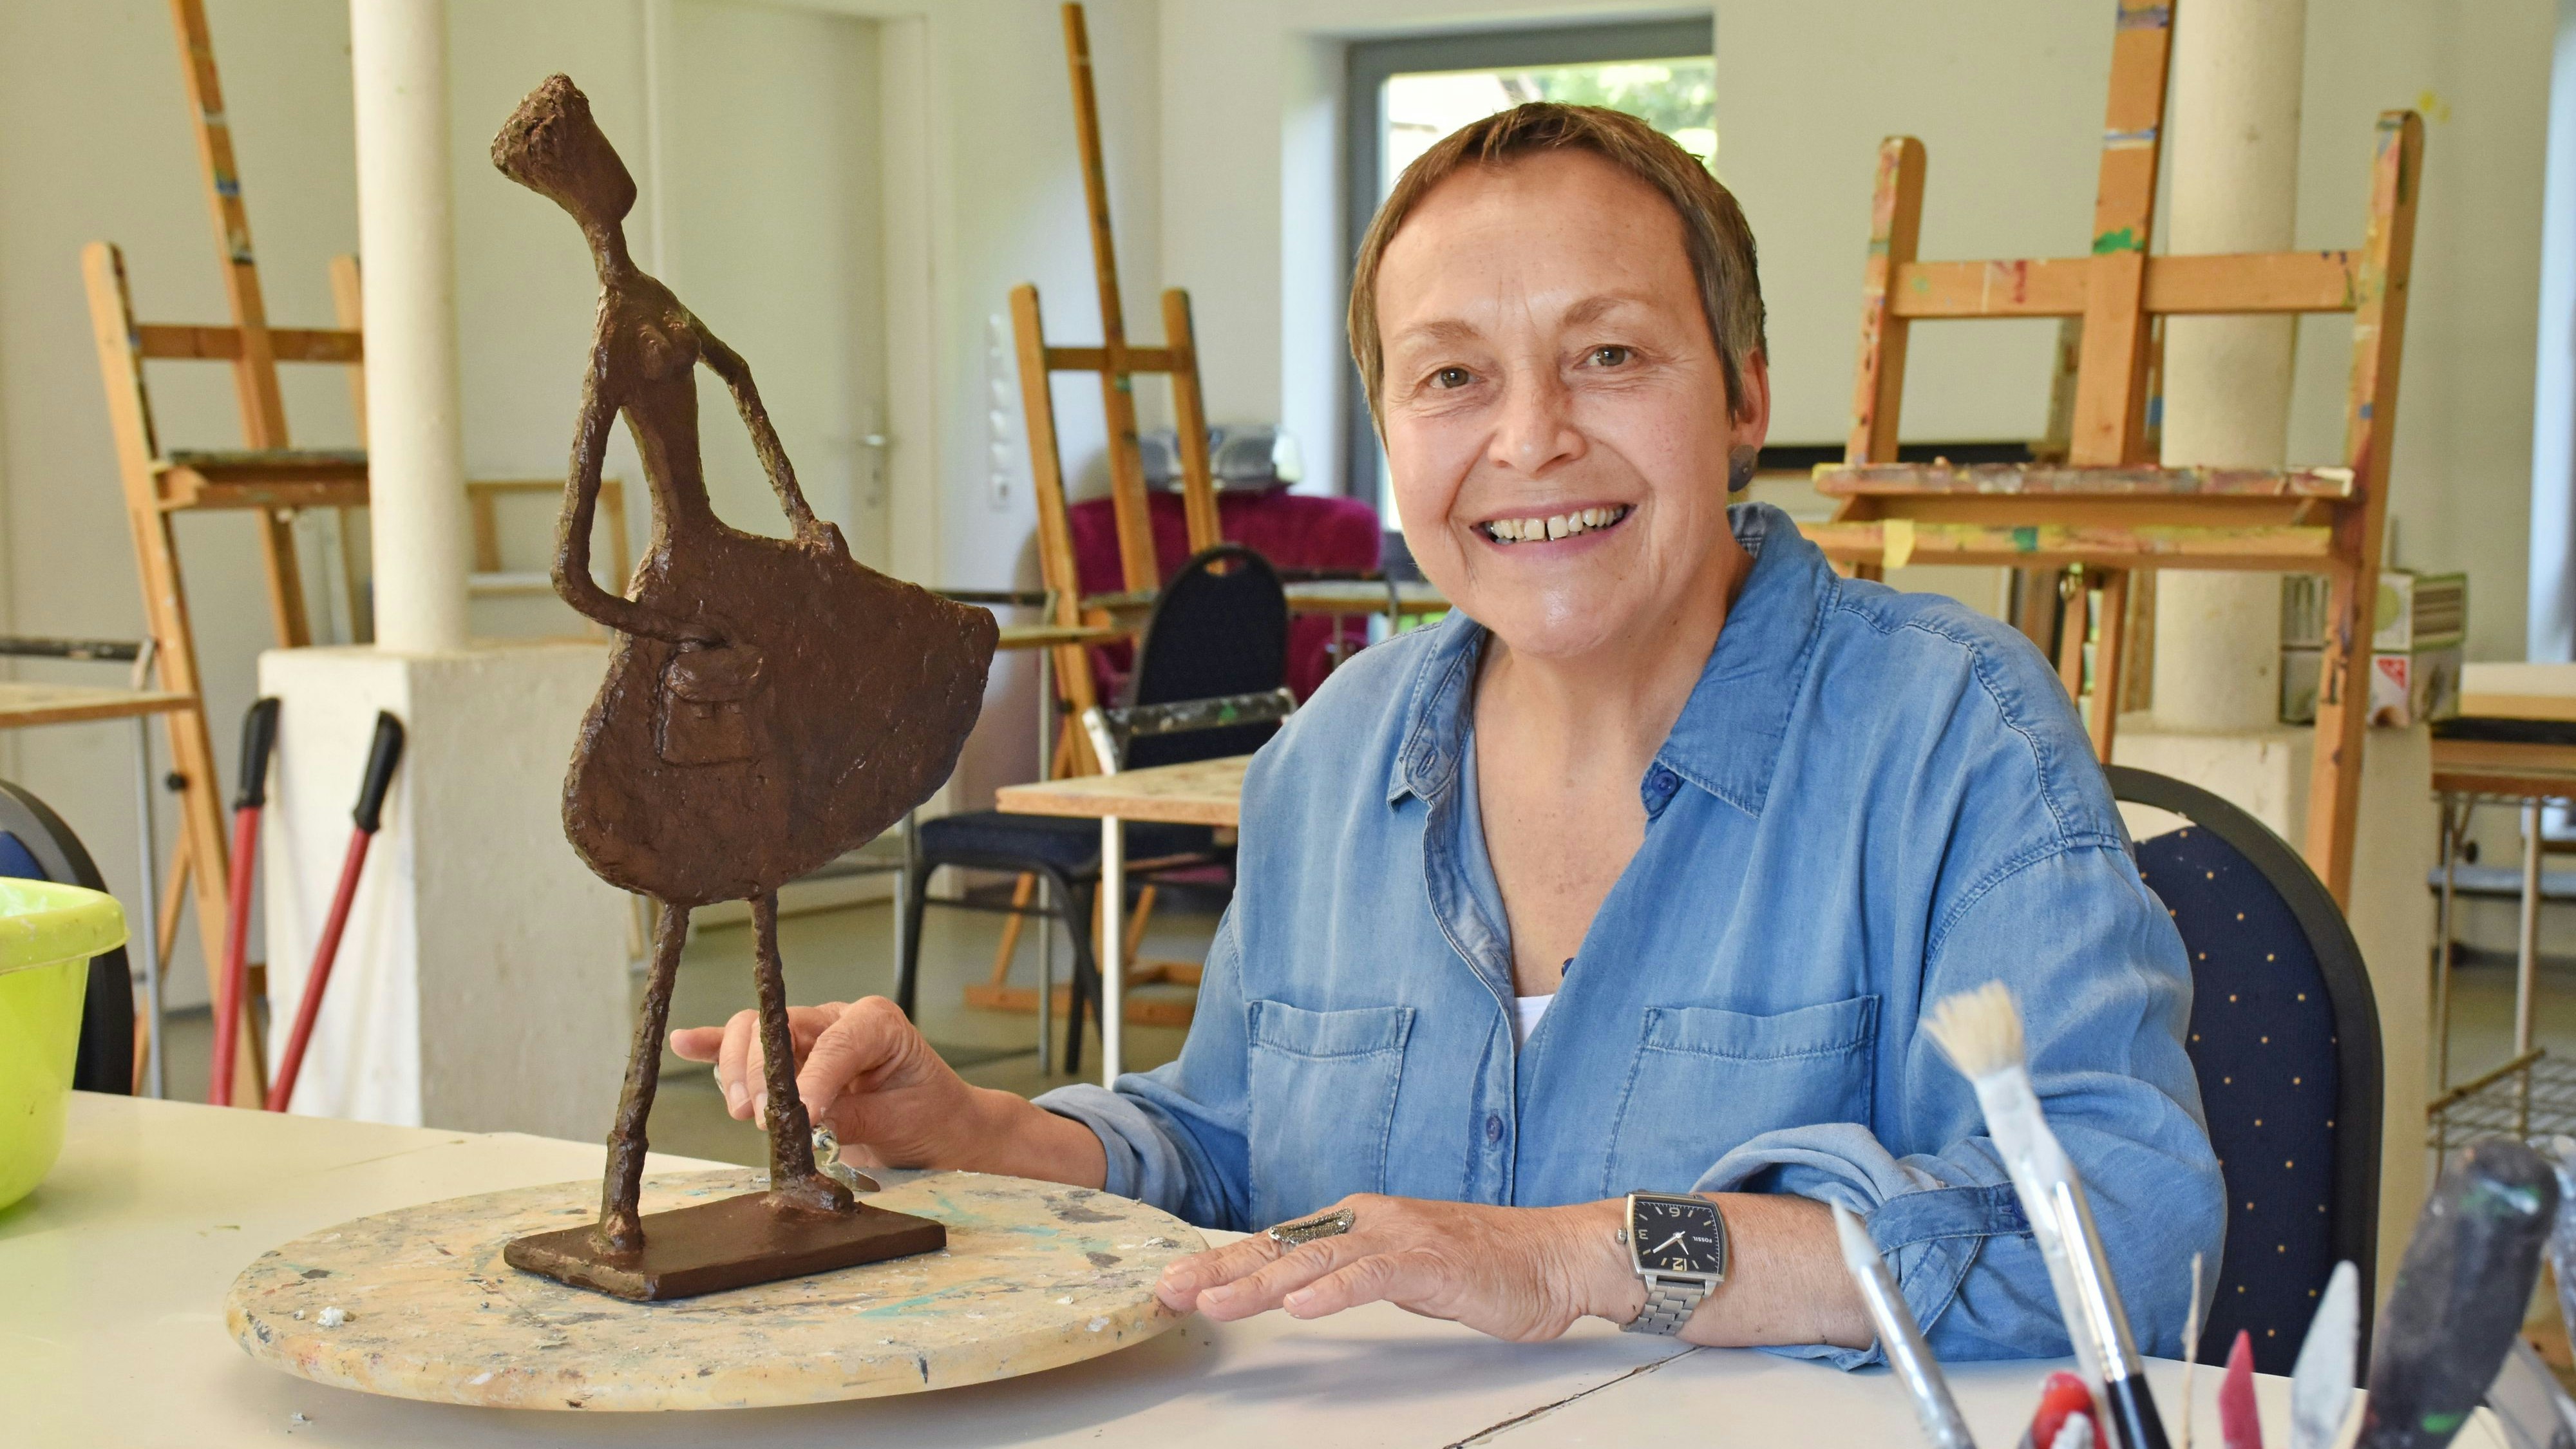 Kunst ist ihre Leidenschaft: Die Freude ist bei Anne Hollmann groß, dass sie die Skulptur für die Verleihung der „Zukunftsmacherin 2022“ kreieren durfte. Foto: Tanja Schulte-Saß